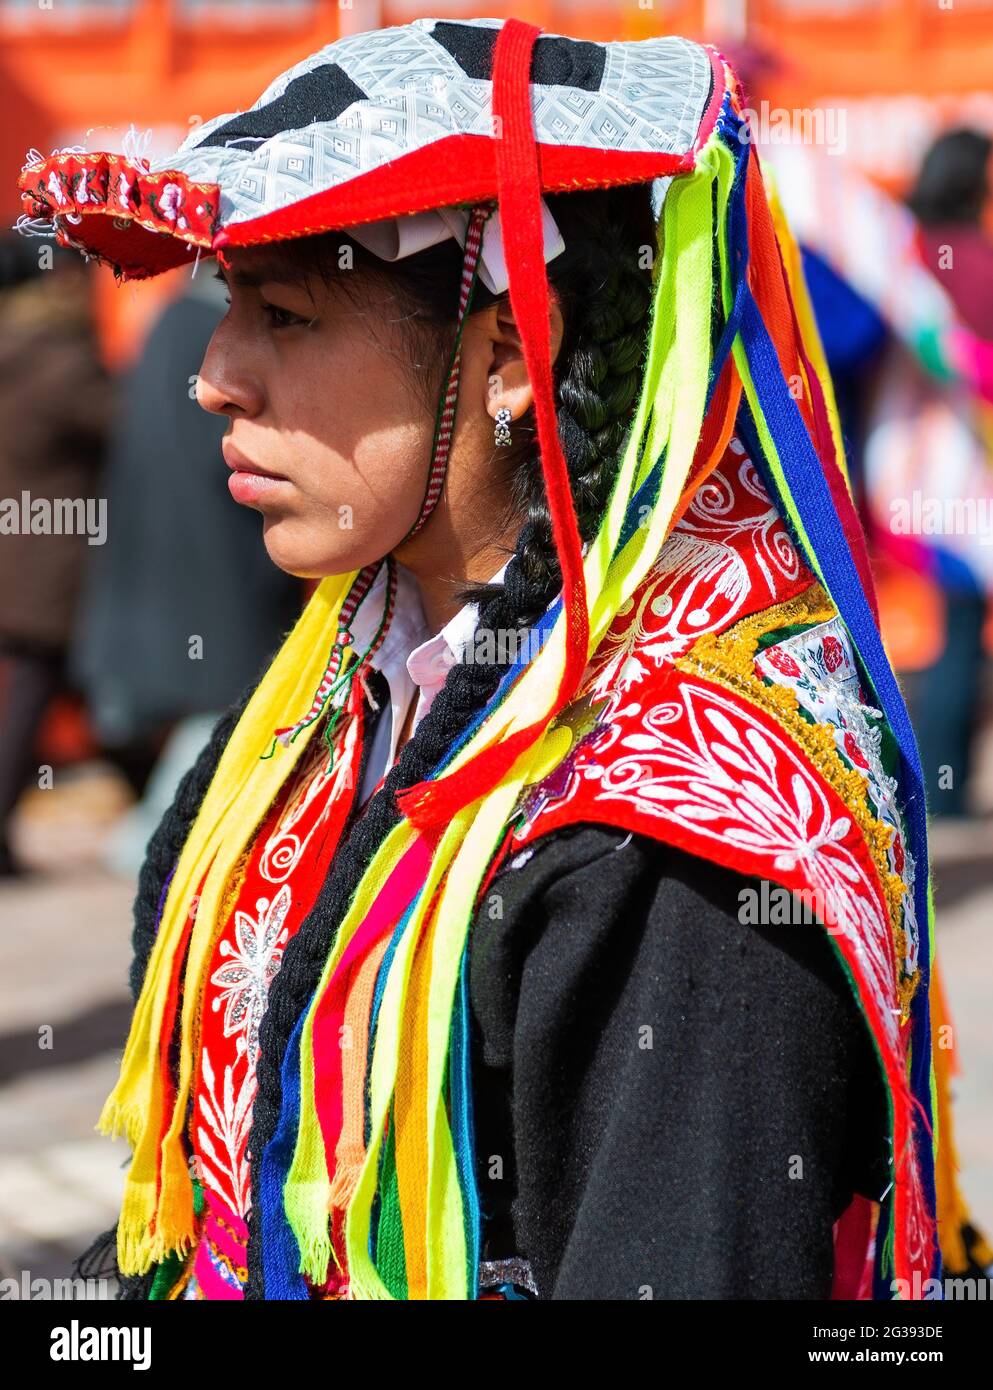 Portrait de femme autochtone péruvienne quechua dans des vêtements traditionnels pendant le festival du soleil Inti Raymi, Cusco, Pérou. Banque D'Images